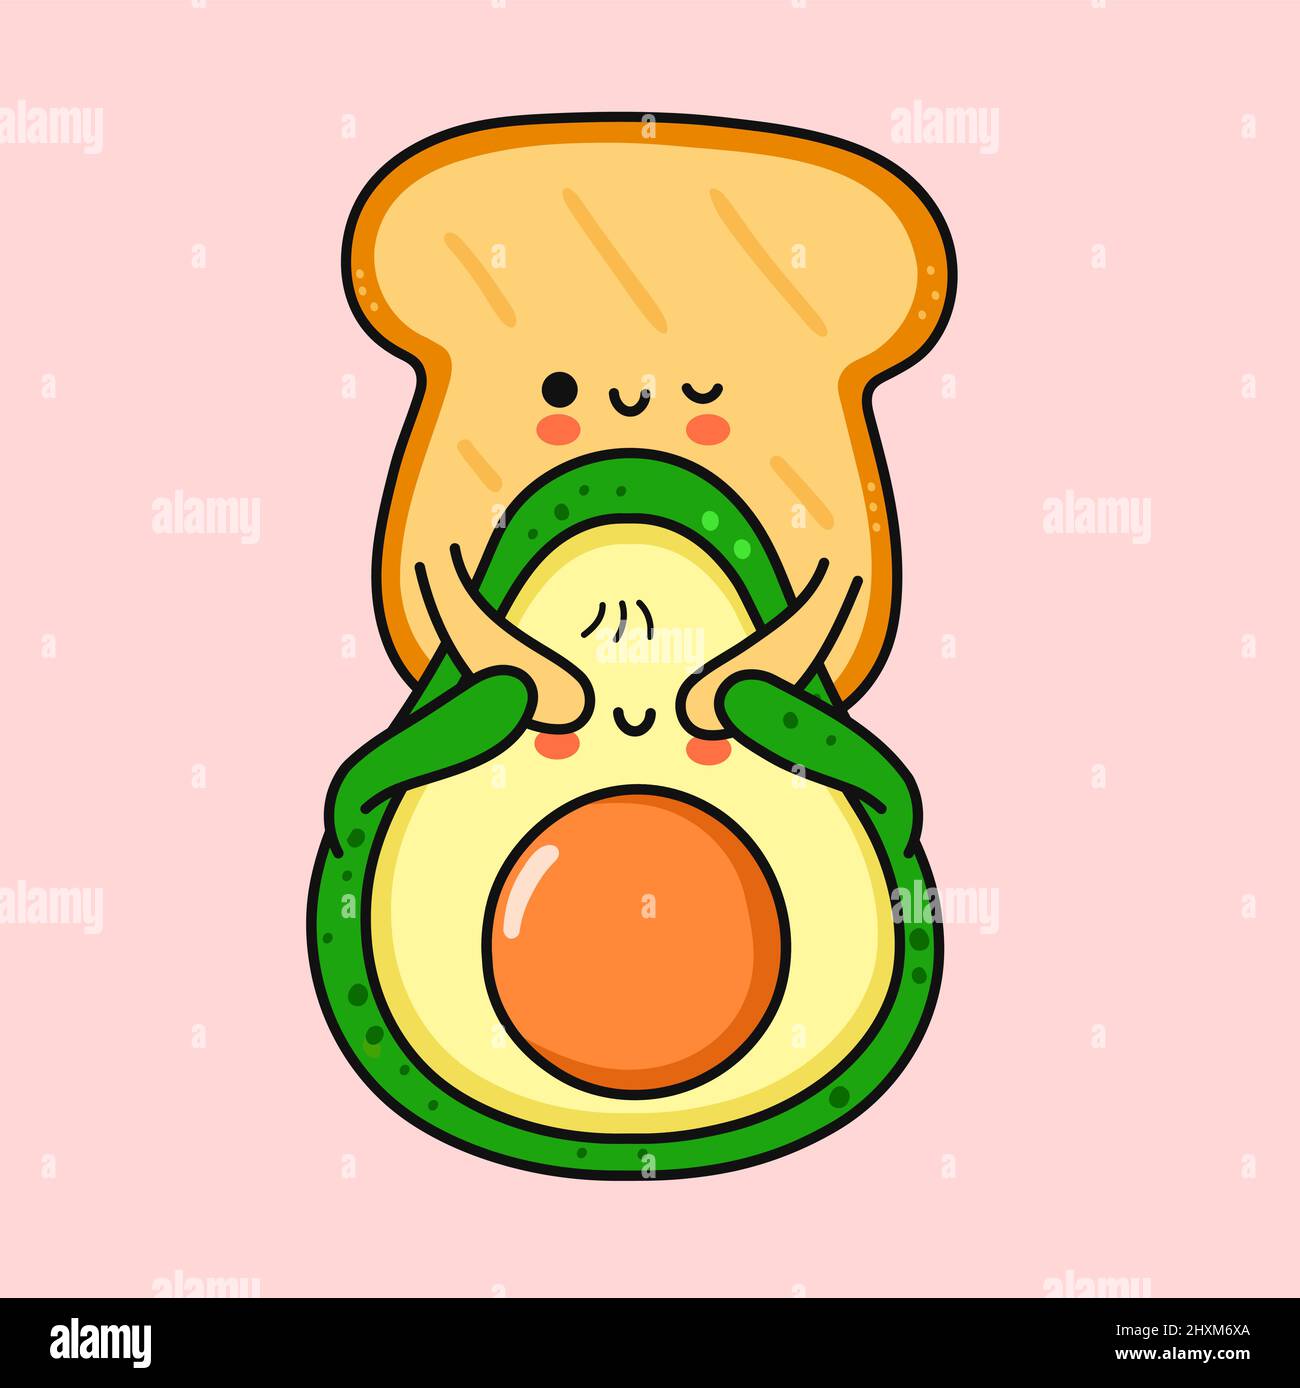 Simpatico toast divertente fare avocado sorpresa.Vector disegnata a mano cartoon doodle kawaii personaggio icona illustrazione. Avocado, cibo sano, toast cartone animato carattere concetto Illustrazione Vettoriale